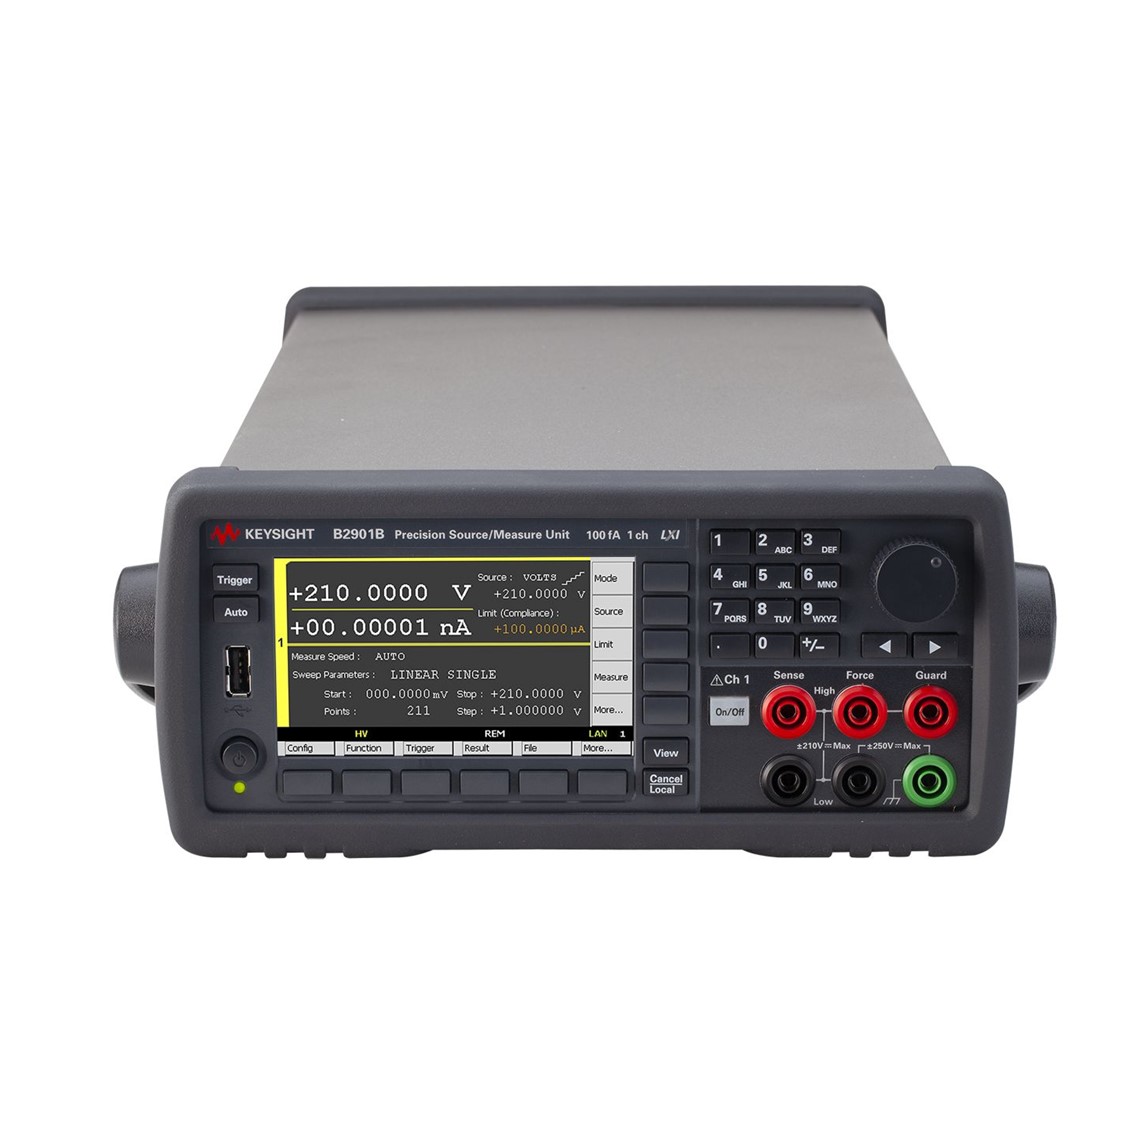 [ KEYSIGHT ] B2901B 정밀 소스 측정 장치 1채널/100fA분해능/210V/3A DC/10.5A pulse